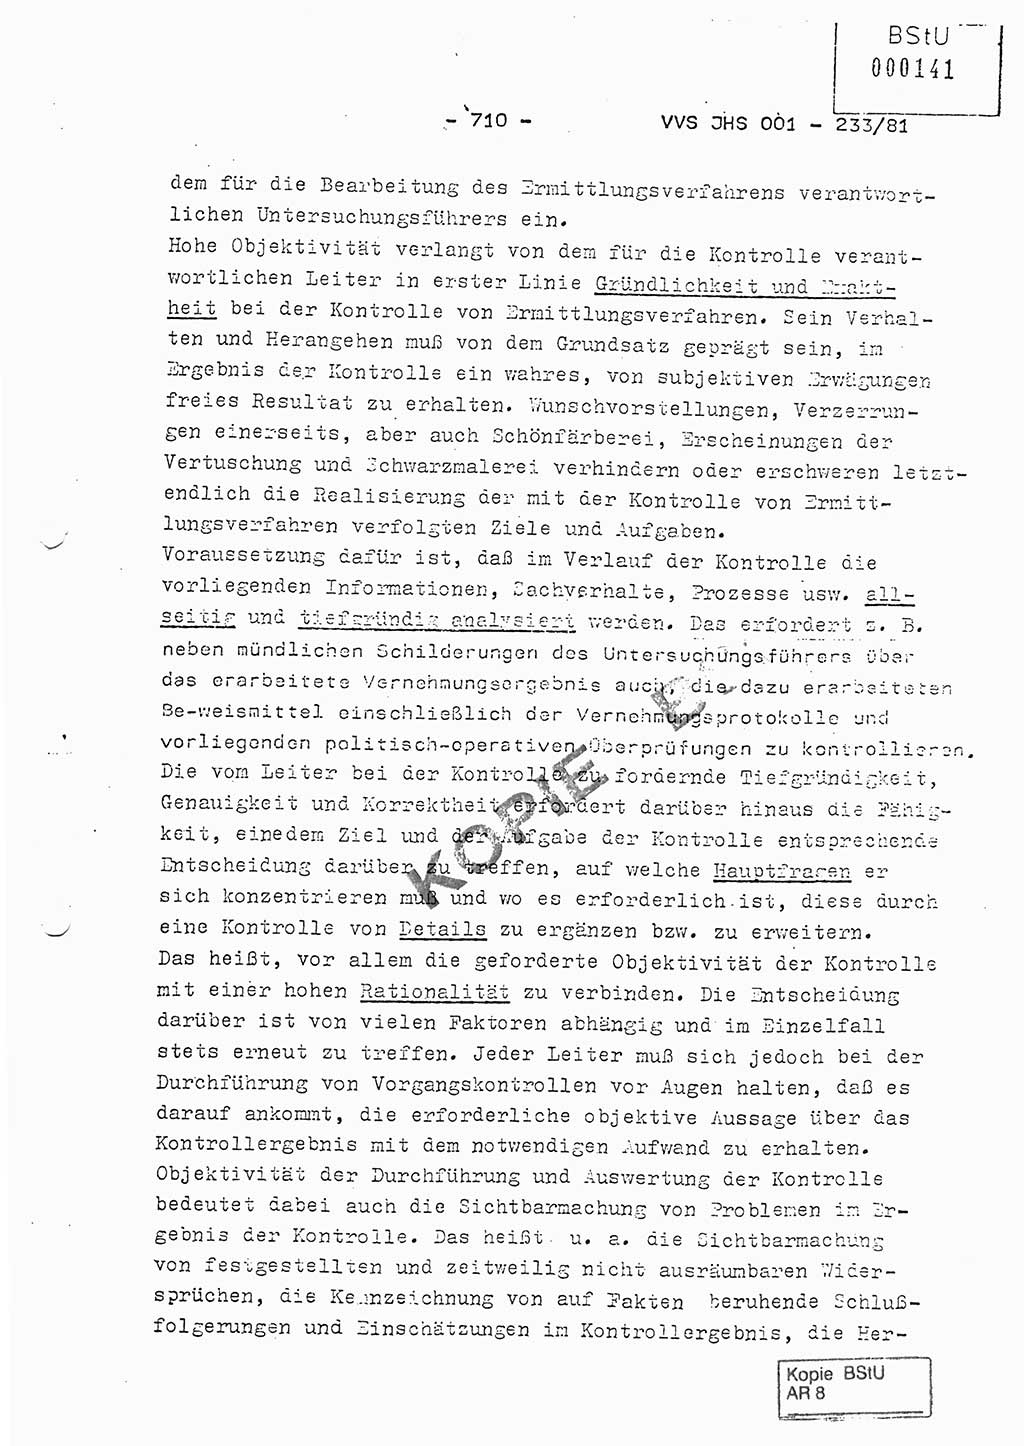 Dissertation Oberstleutnant Horst Zank (JHS), Oberstleutnant Dr. Karl-Heinz Knoblauch (JHS), Oberstleutnant Gustav-Adolf Kowalewski (HA Ⅸ), Oberstleutnant Wolfgang Plötner (HA Ⅸ), Ministerium für Staatssicherheit (MfS) [Deutsche Demokratische Republik (DDR)], Juristische Hochschule (JHS), Vertrauliche Verschlußsache (VVS) o001-233/81, Potsdam 1981, Blatt 710 (Diss. MfS DDR JHS VVS o001-233/81 1981, Bl. 710)